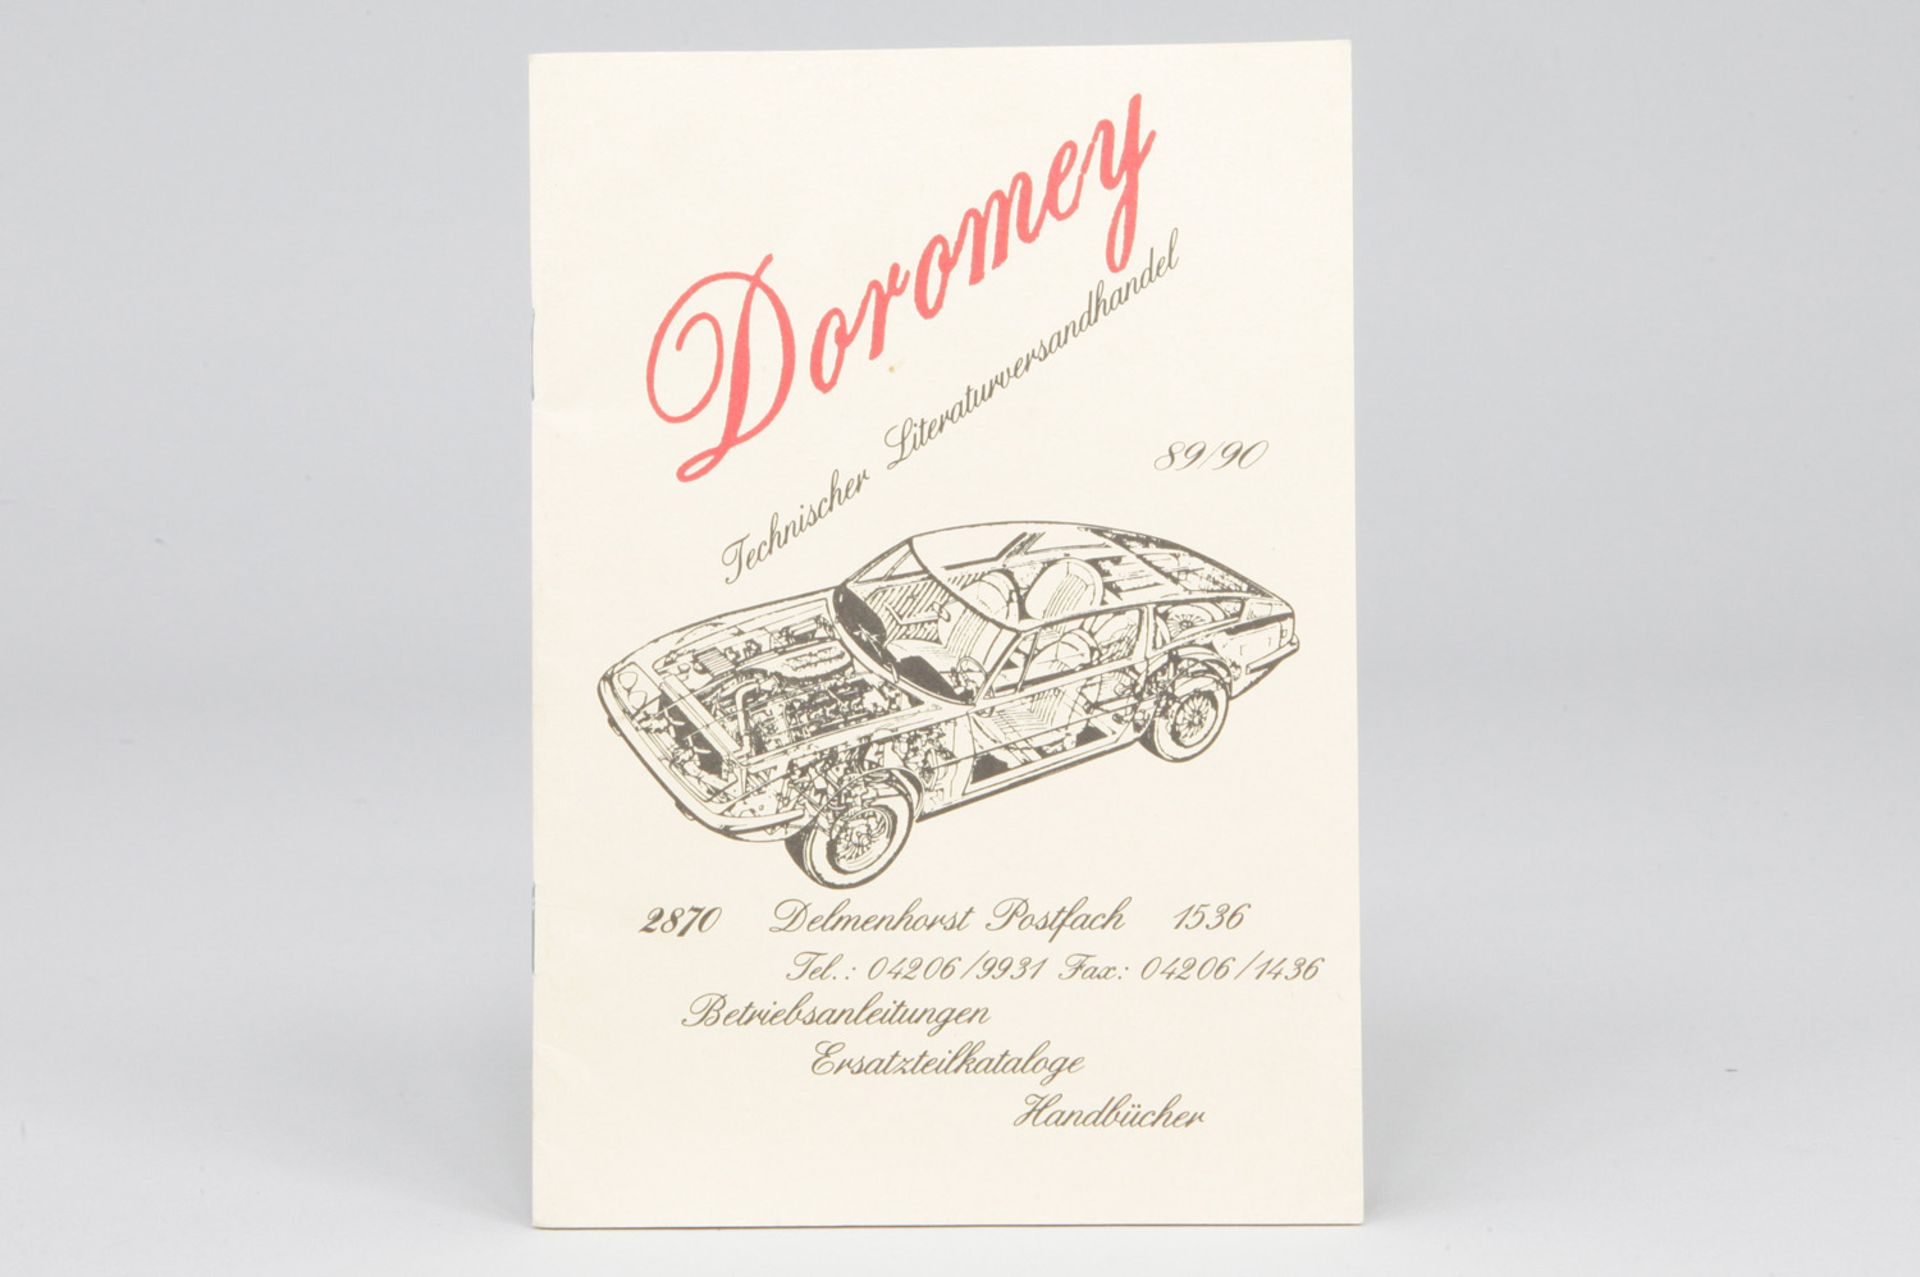 Katalog "Doromey Technischer Literaturversandhandel", 89/90, Nr. 2870, 69 S., deutsch